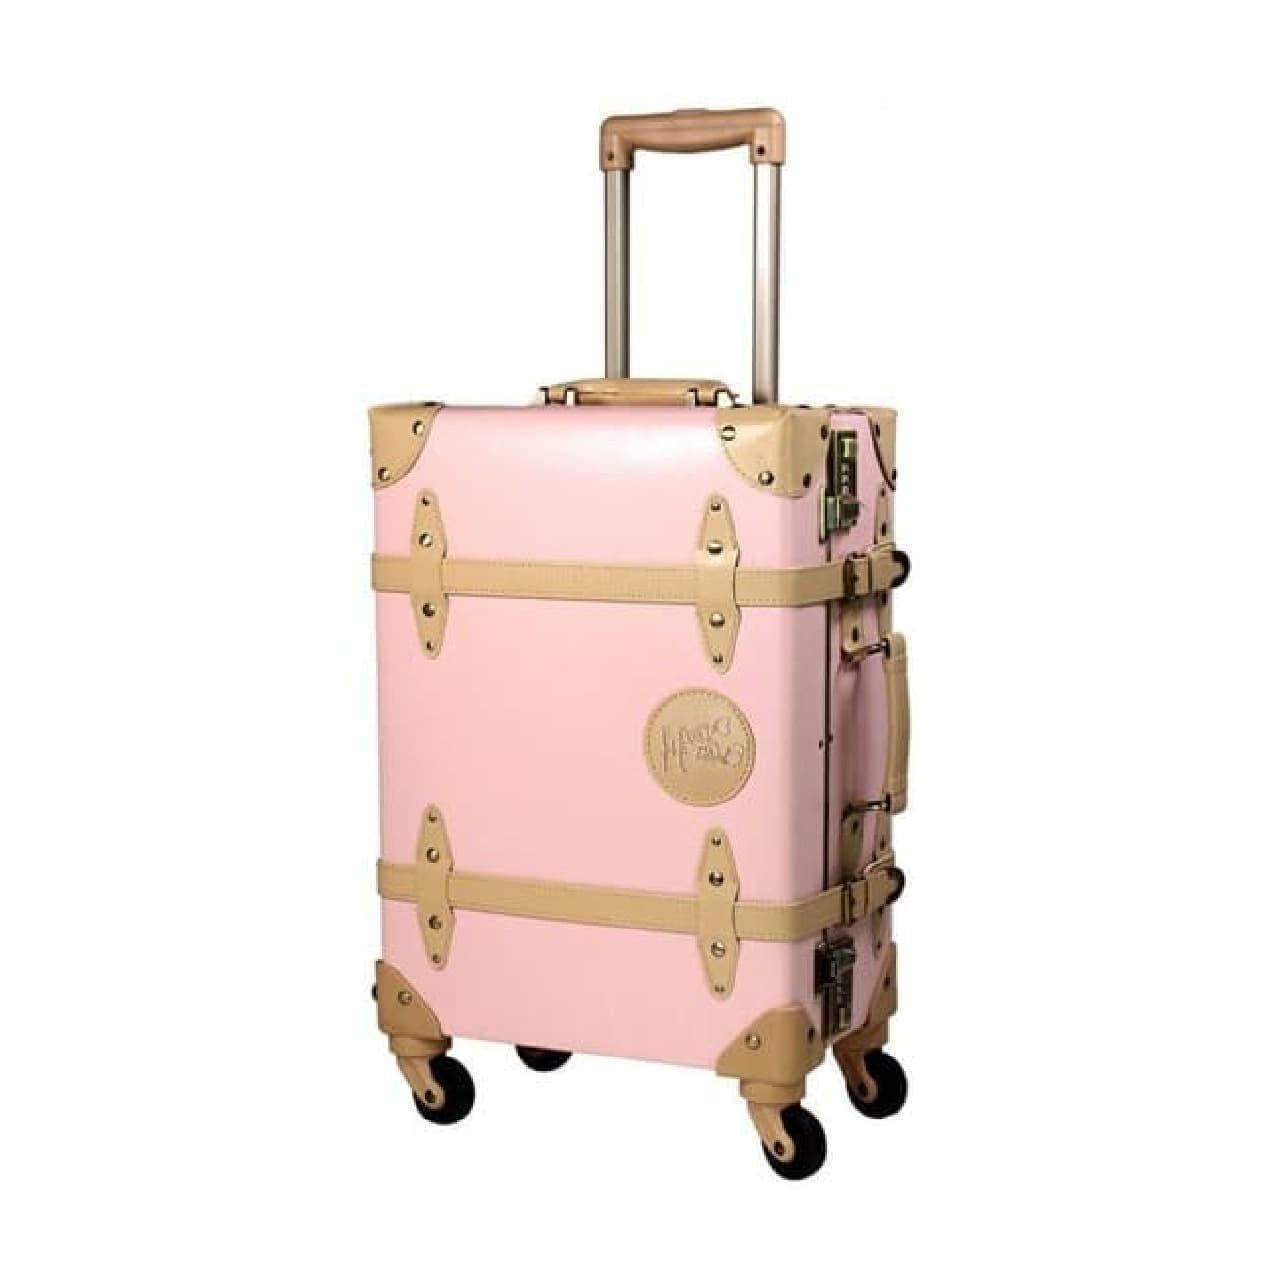 コリラックマ・キイロイトリ柄スーツケースがヴィレヴァンに -- 軽量の機内持ち込みサイズ